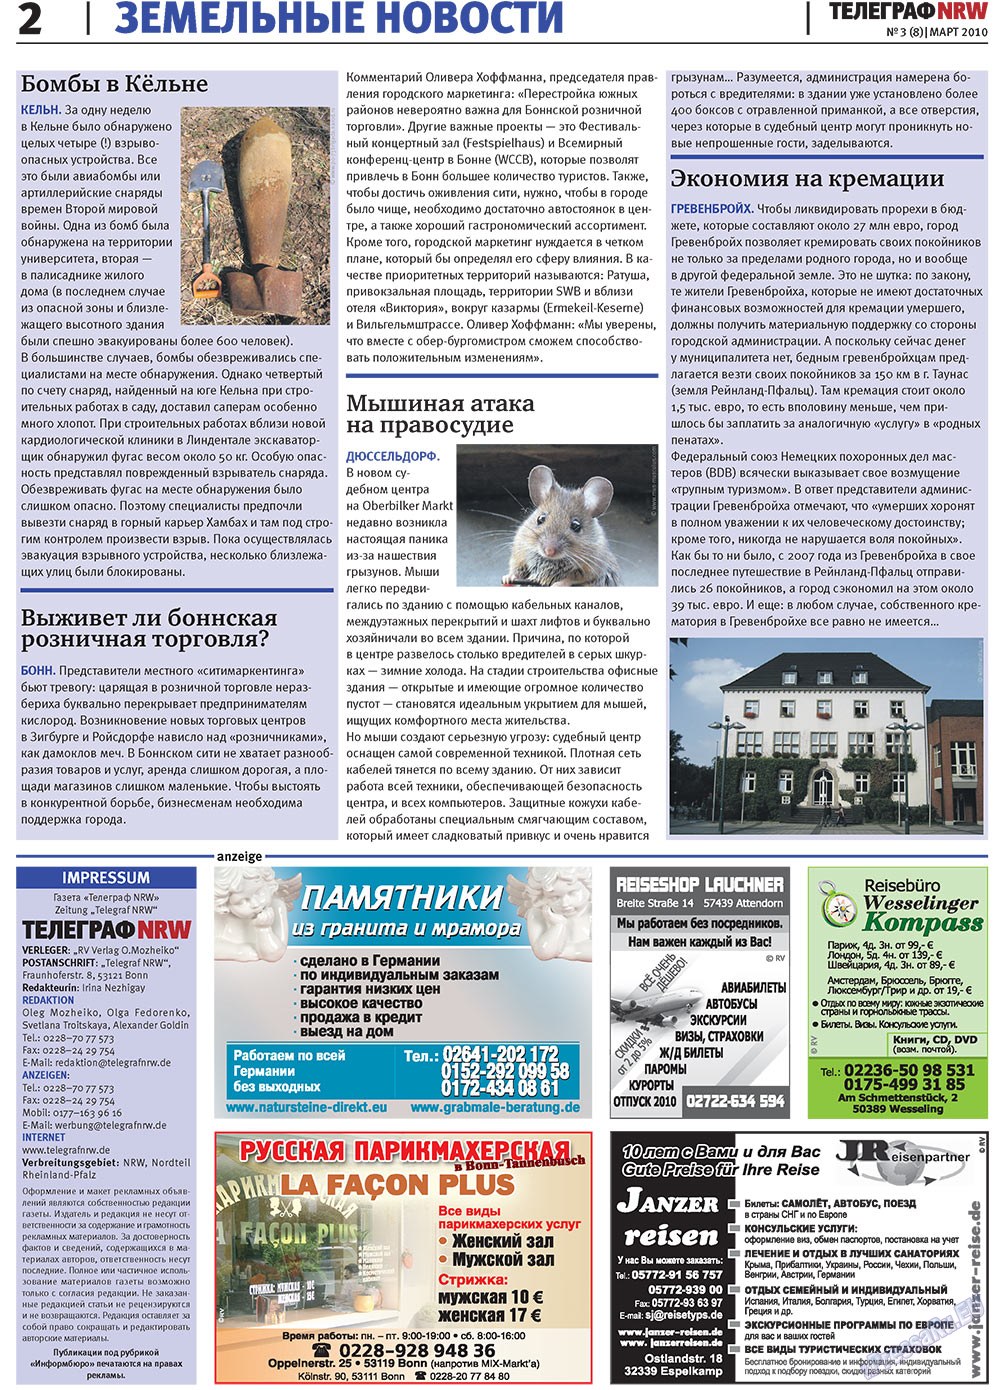 Телеграф NRW (газета). 2010 год, номер 3, стр. 2